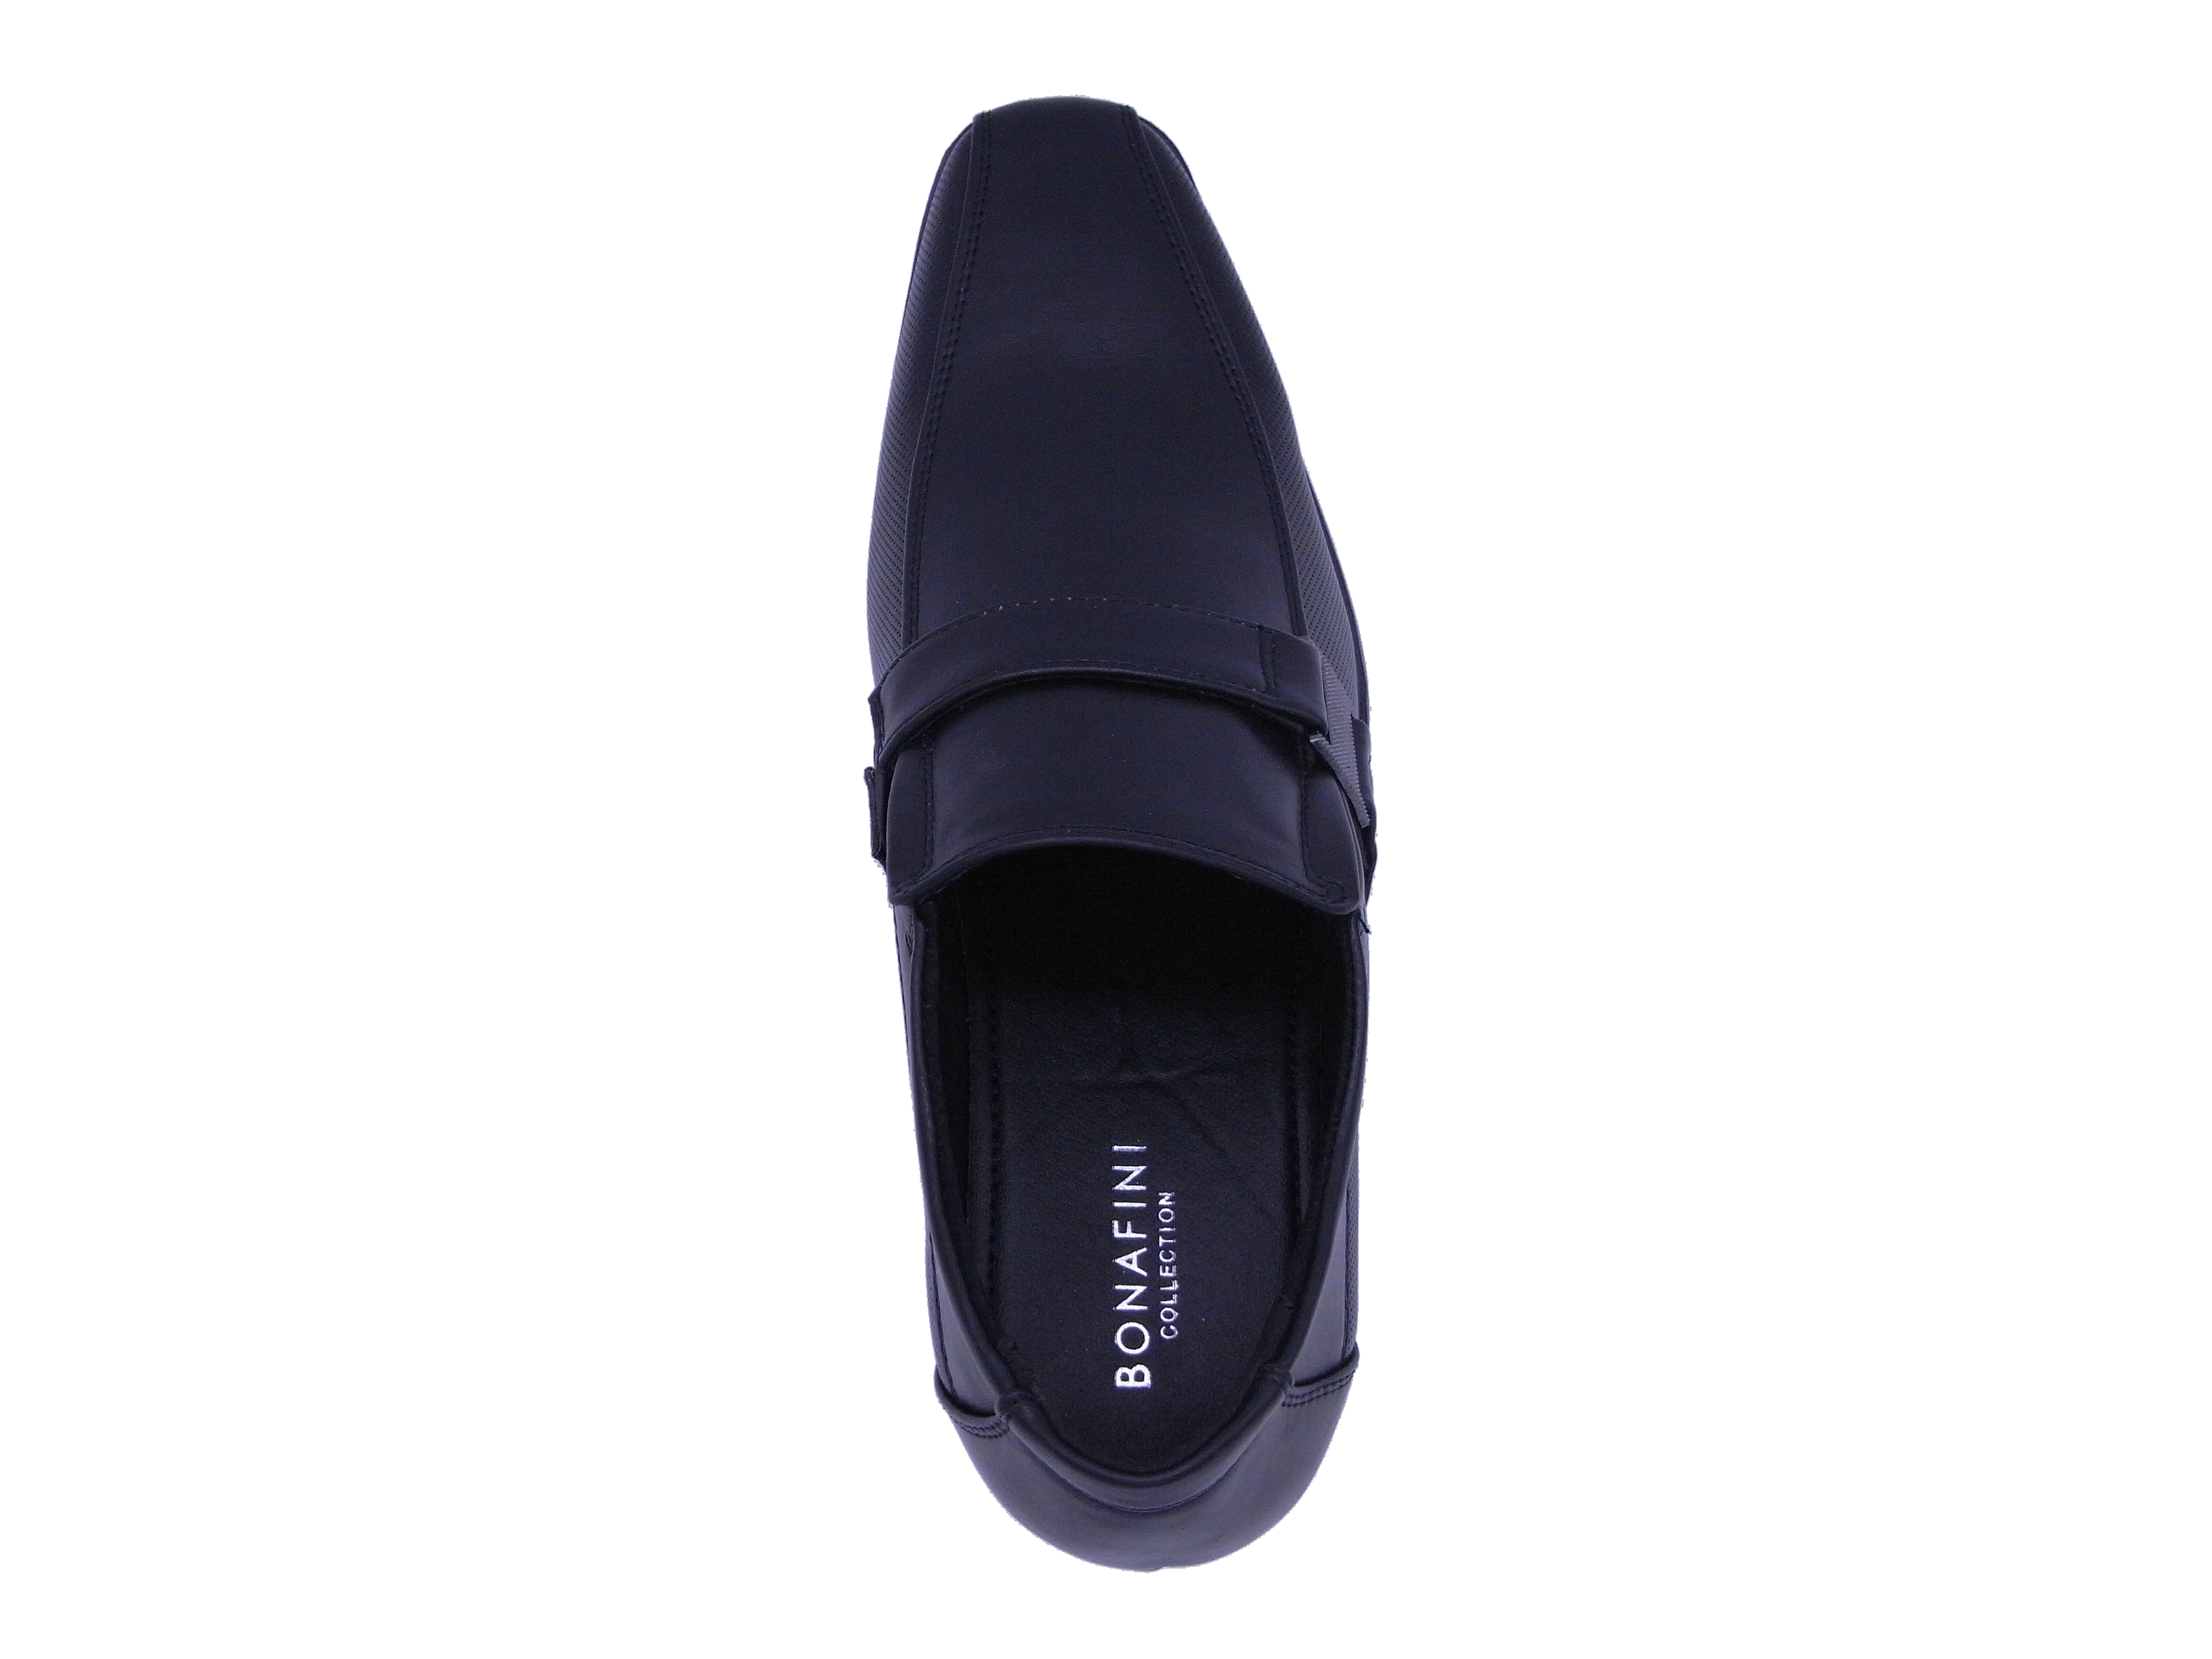 Men Shoes Slip On Strap Loafer Black Color Size US8 - image 5 of 5